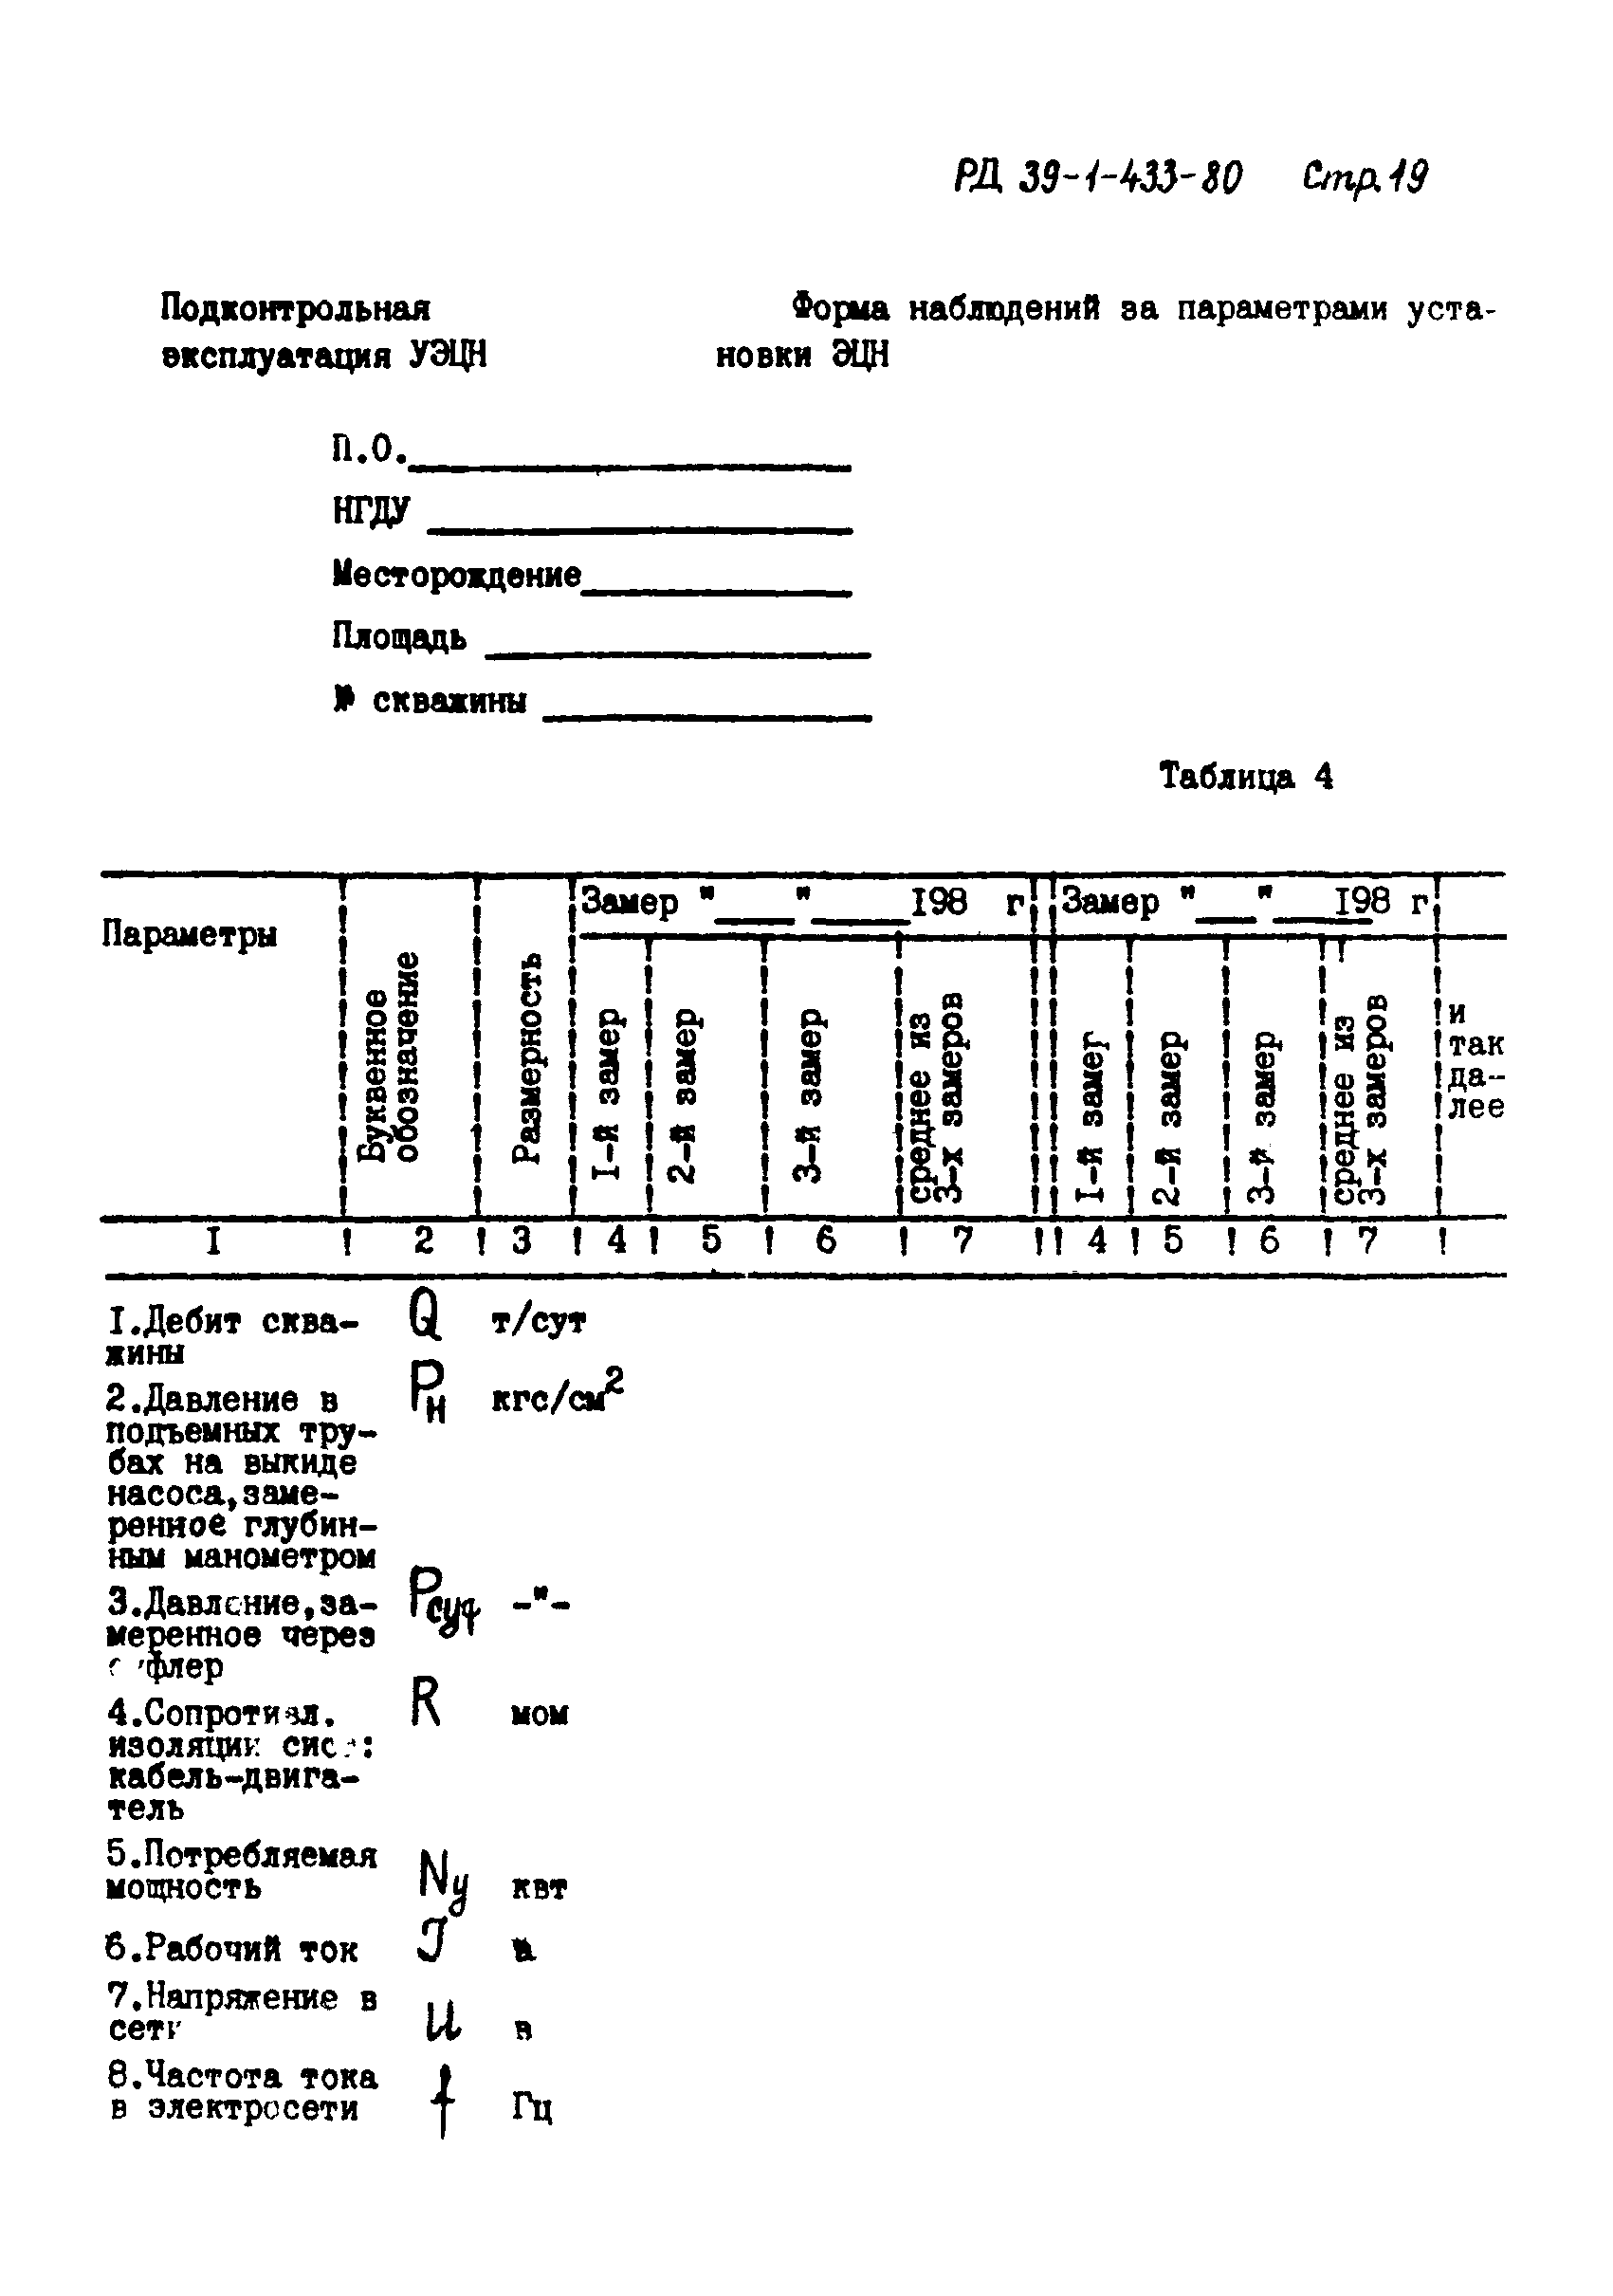 РД 39-1-433-80